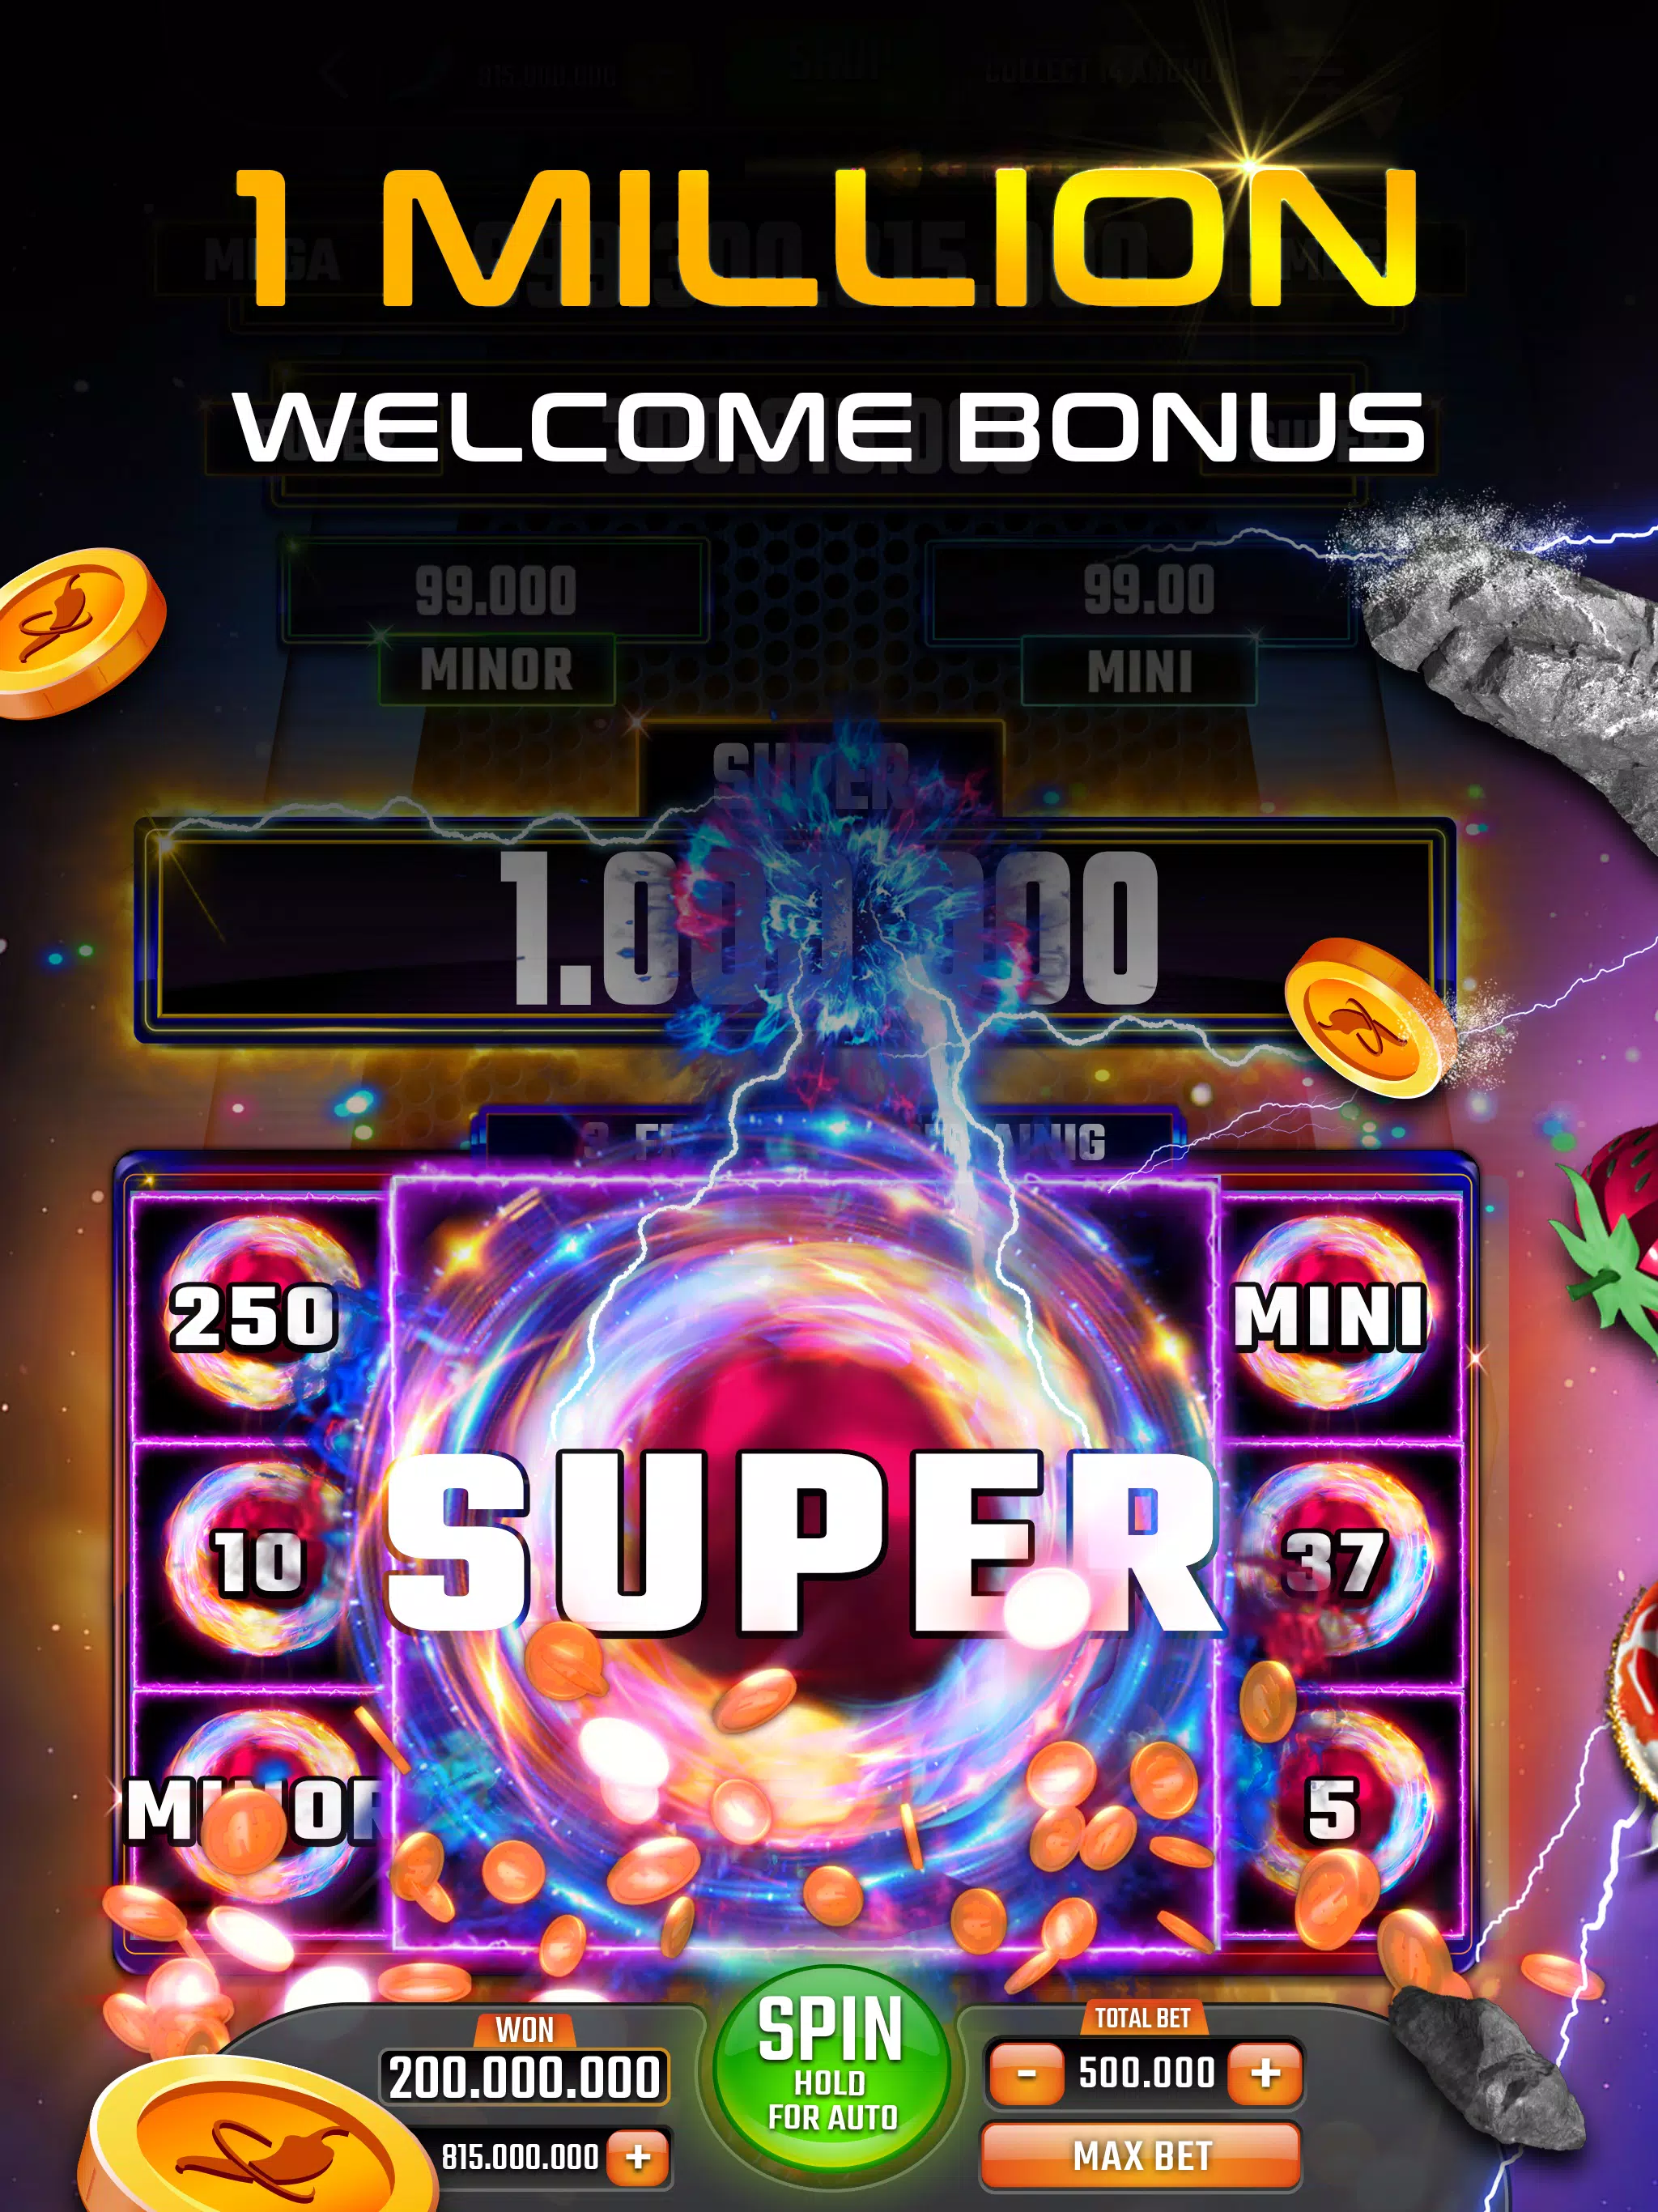 Spicybet casino online jogar jogos de slot obter bônus de aplicativos